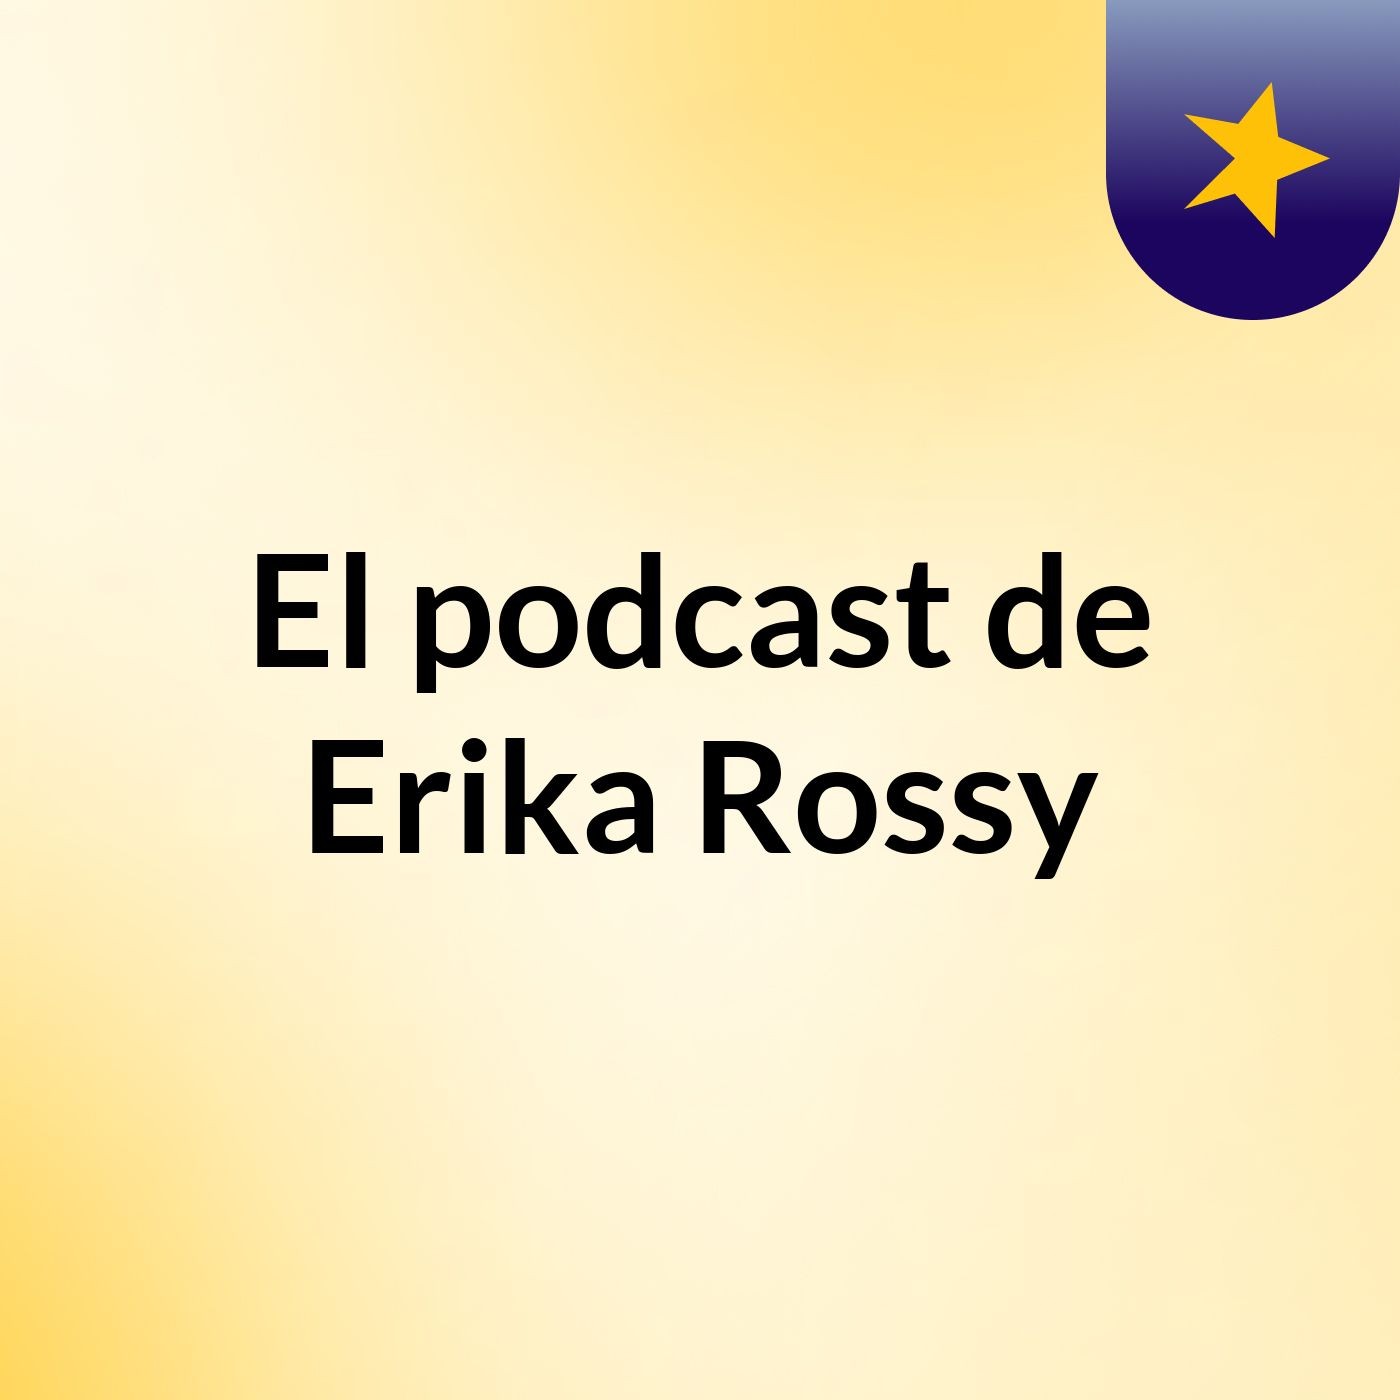 El podcast de Erika Rossy